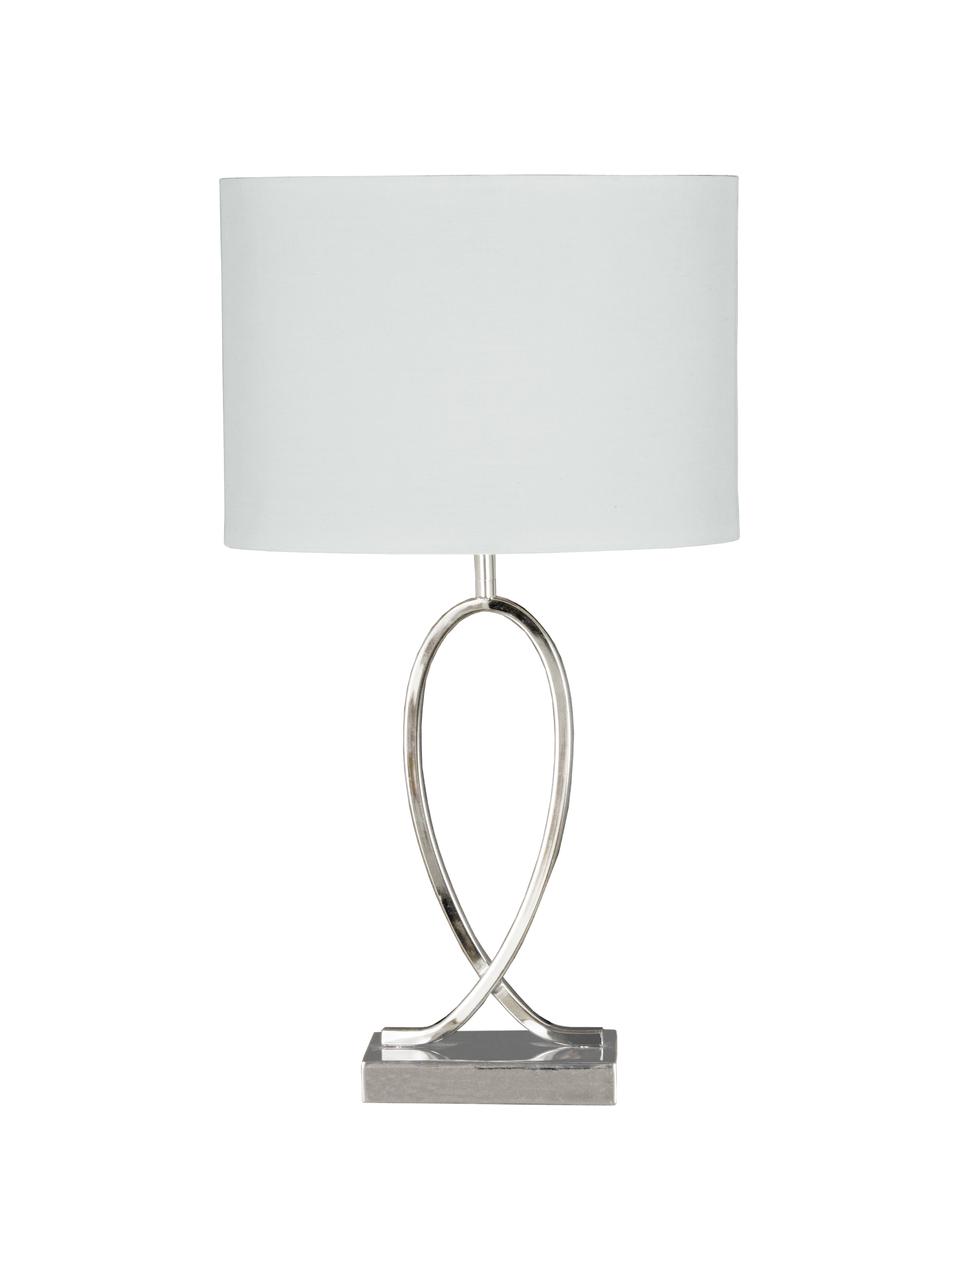 Grote tafellamp Posh met ovale lampenkap, Lampenkap: 40% acryl, 60% polyester, Lampvoet: verchroomd metaal, Chroomkleurig, wit, 30 x 54 cm